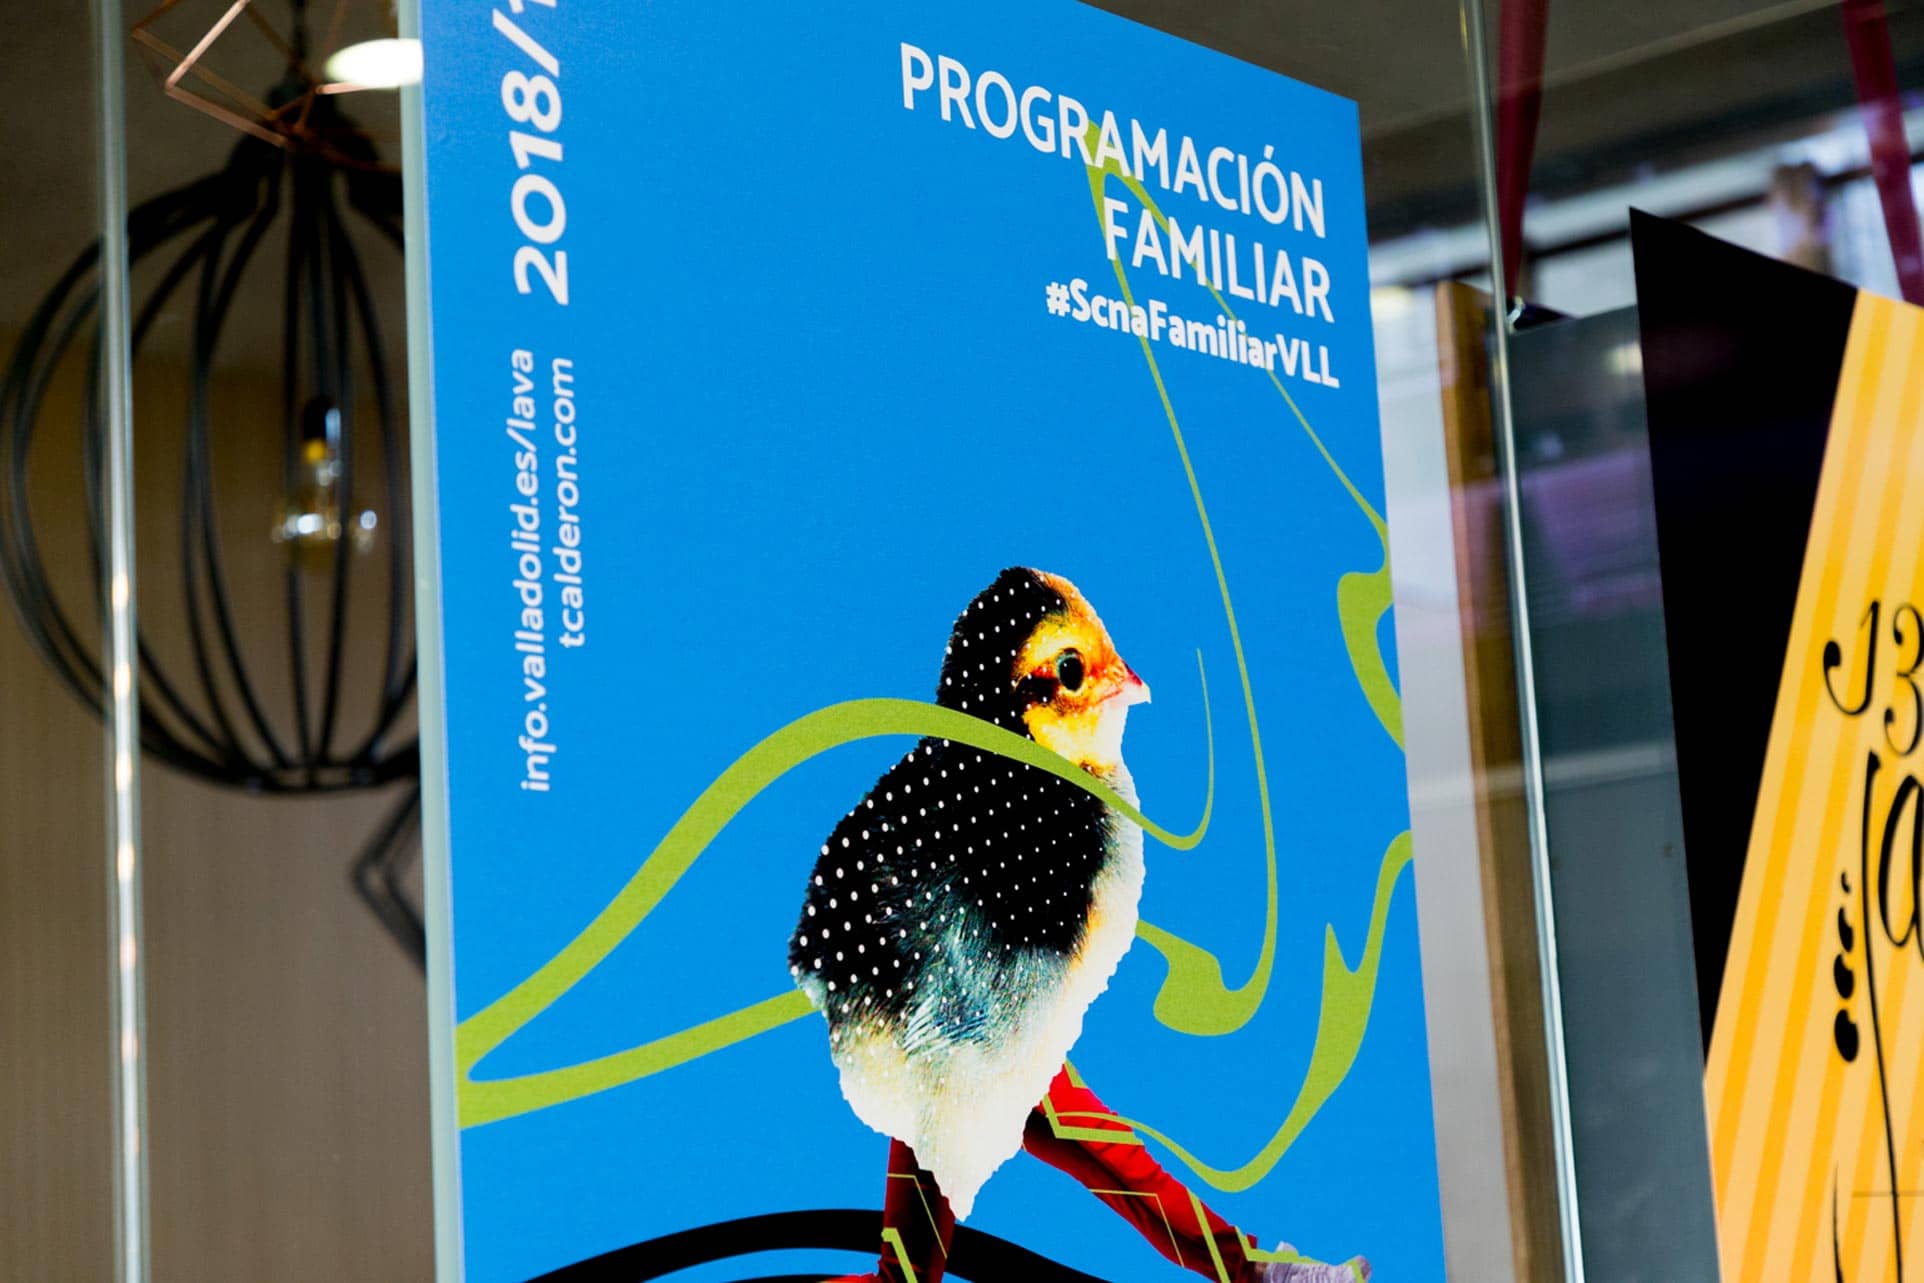 Campaña de publicidad - Cartel Programa Familiar 2 - LAVA Temporada 2018/19